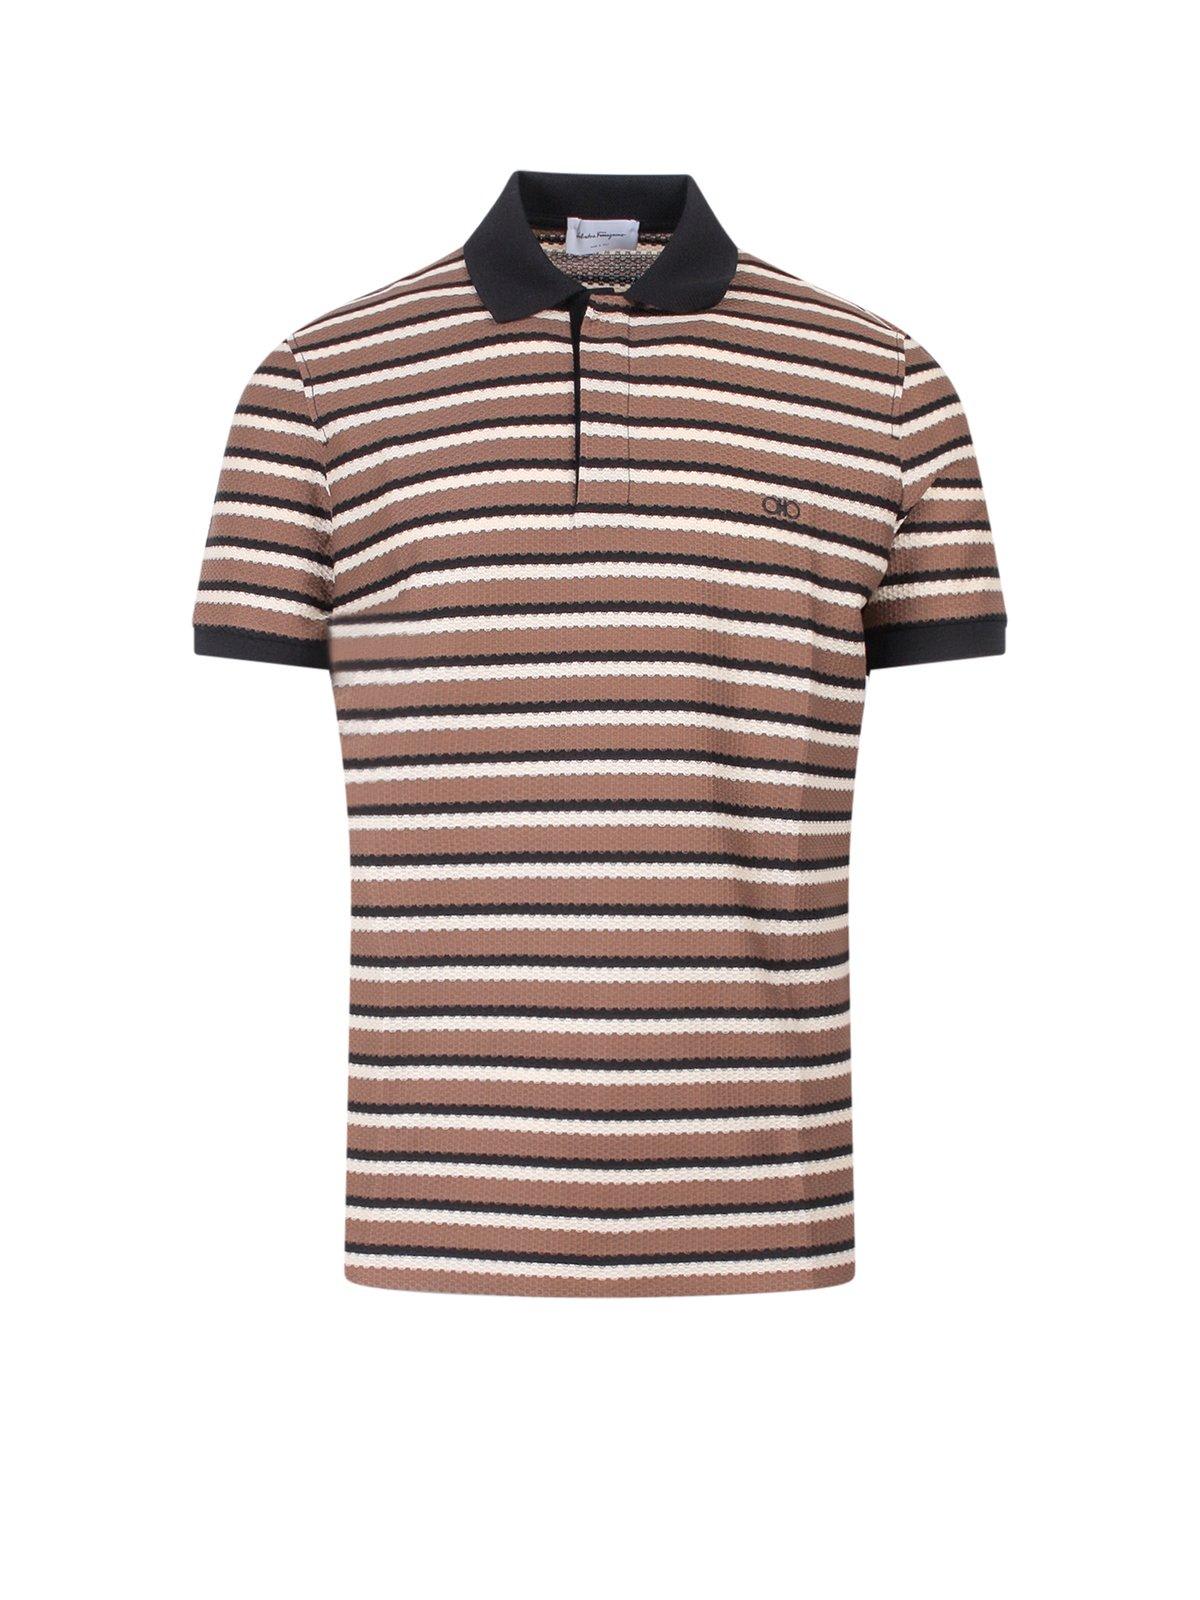 Shop Ferragamo Striped Logo Embroidered Polo Shirt In Noce/black/coco